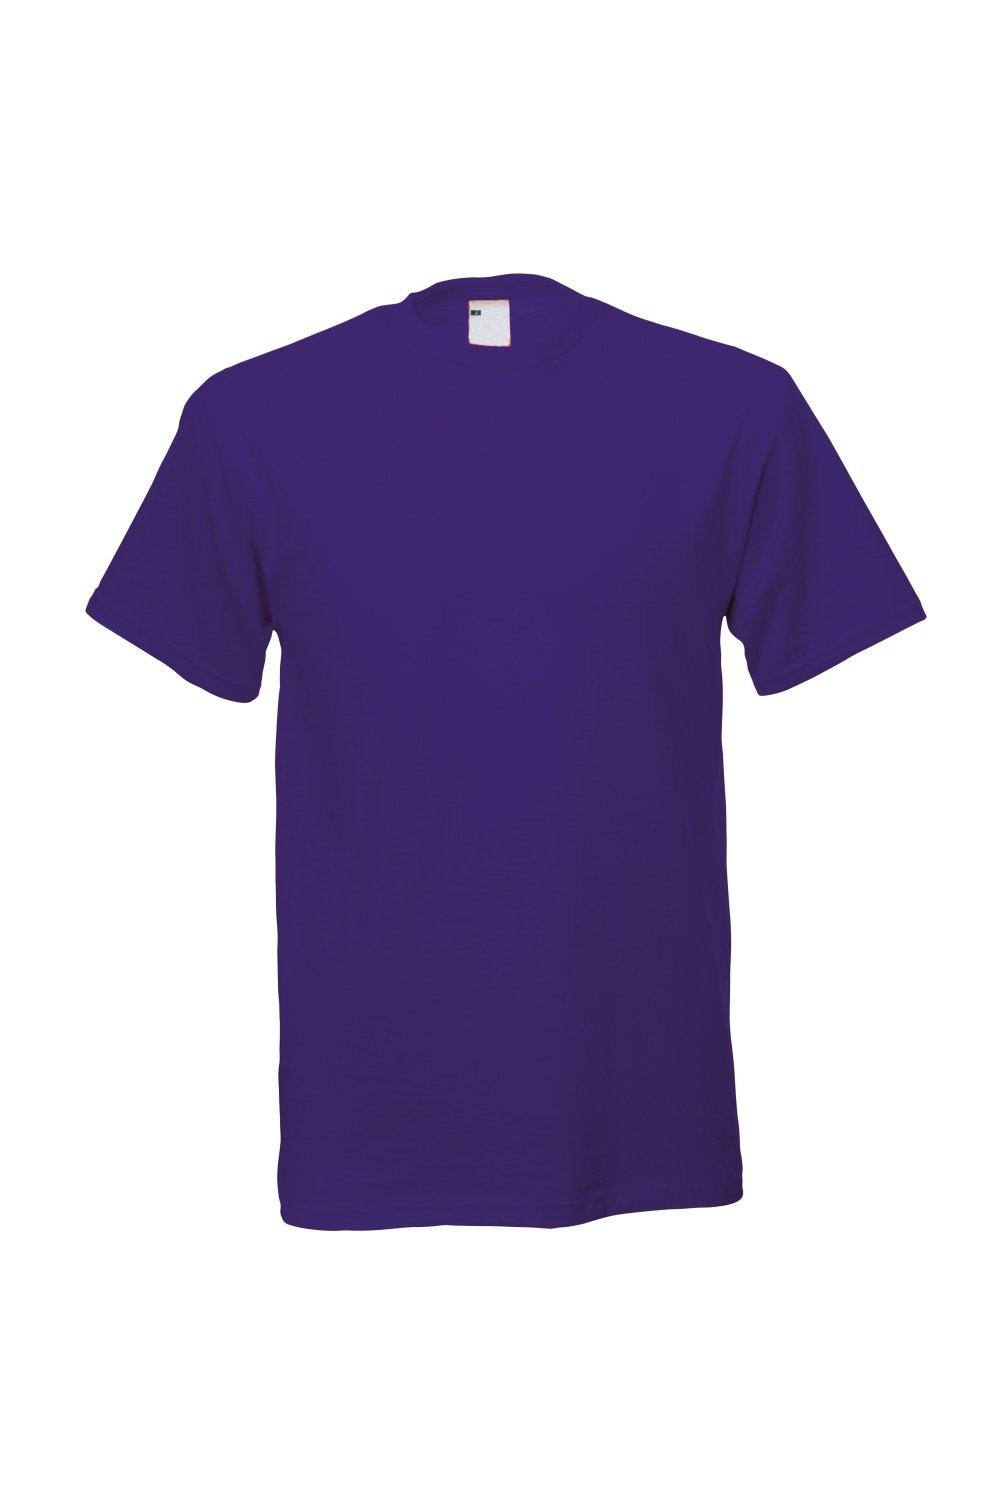 Повседневная футболка с коротким рукавом Universal Textiles, фиолетовый мужская футболка ретро кассета 2xl серый меланж